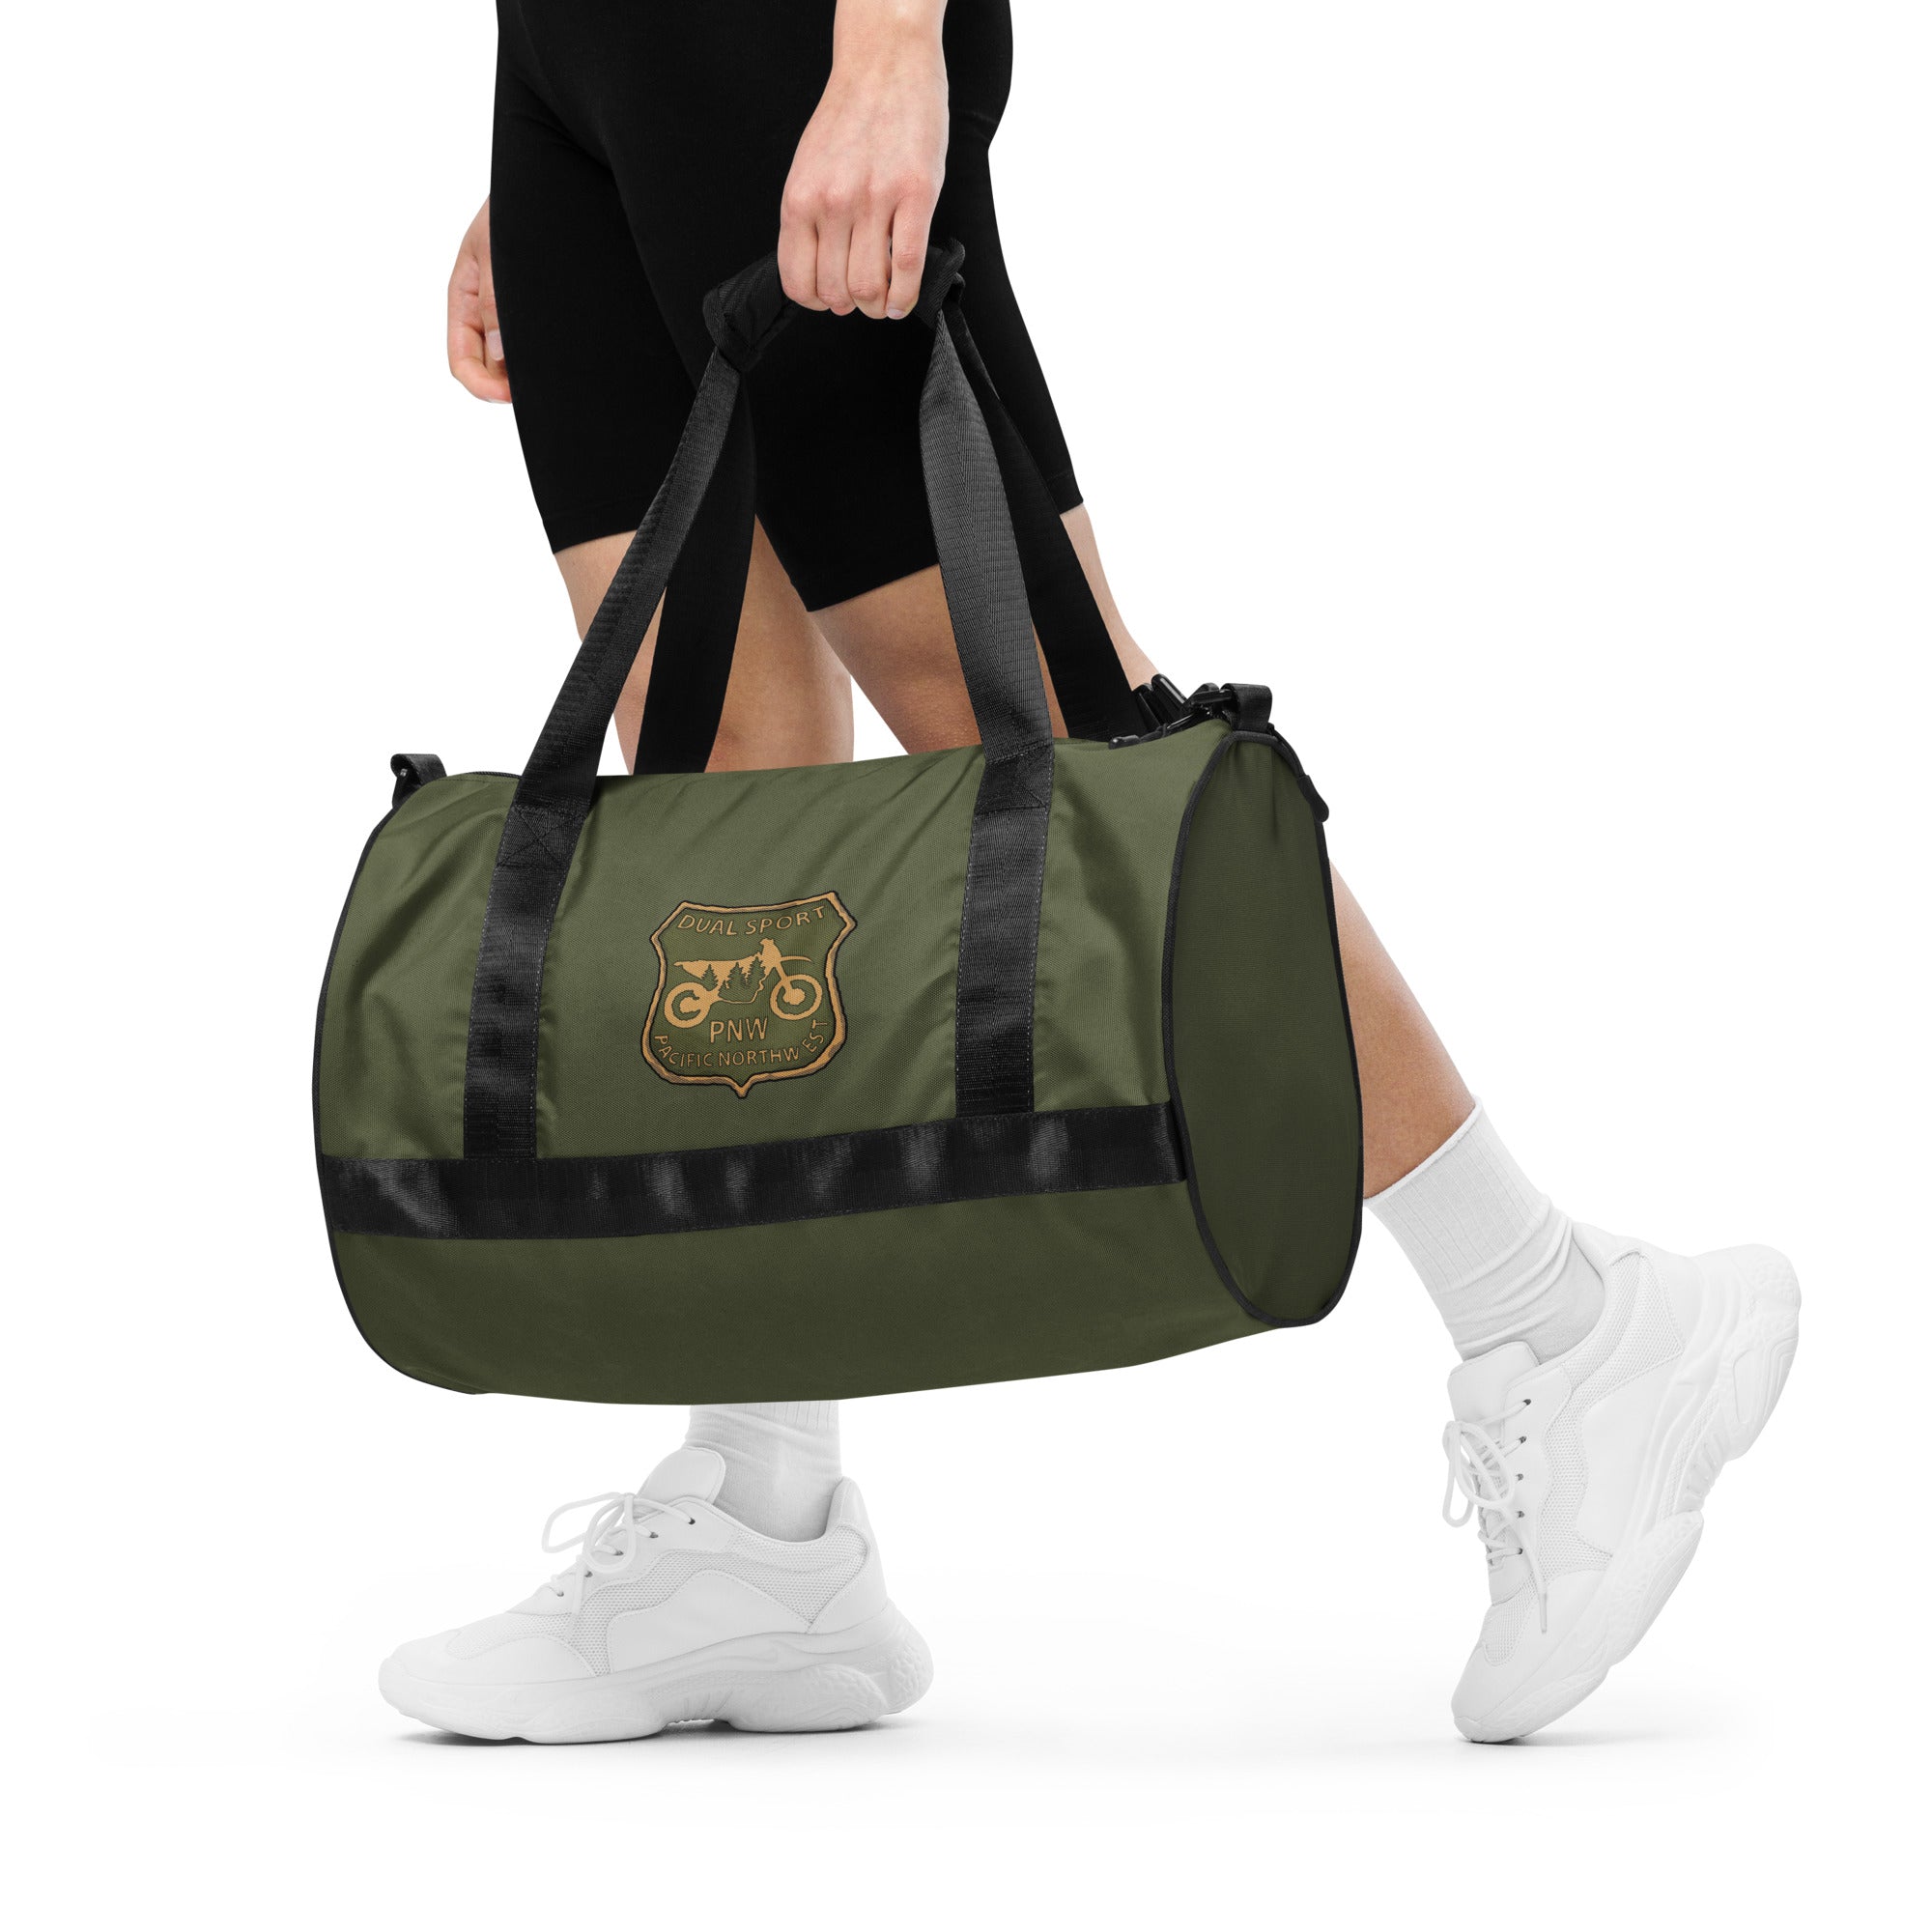 Sketchy Doodle Bag, Gym, Green